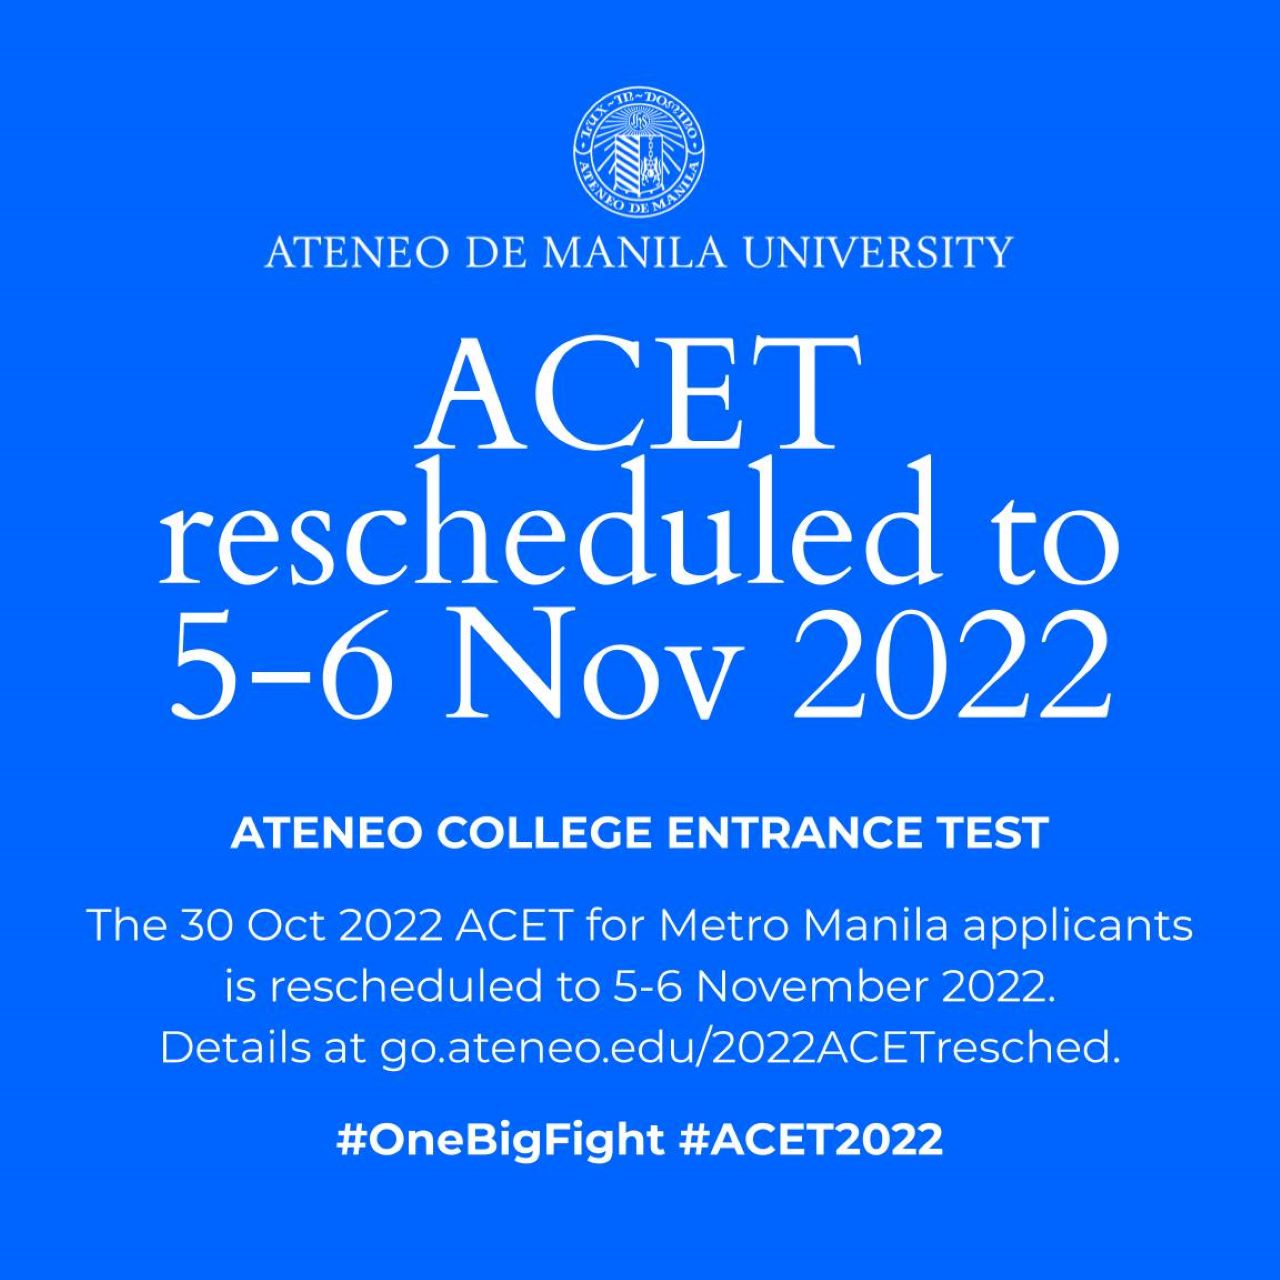 Ateneo Acet 2022 Reschedule Inline 01 Min